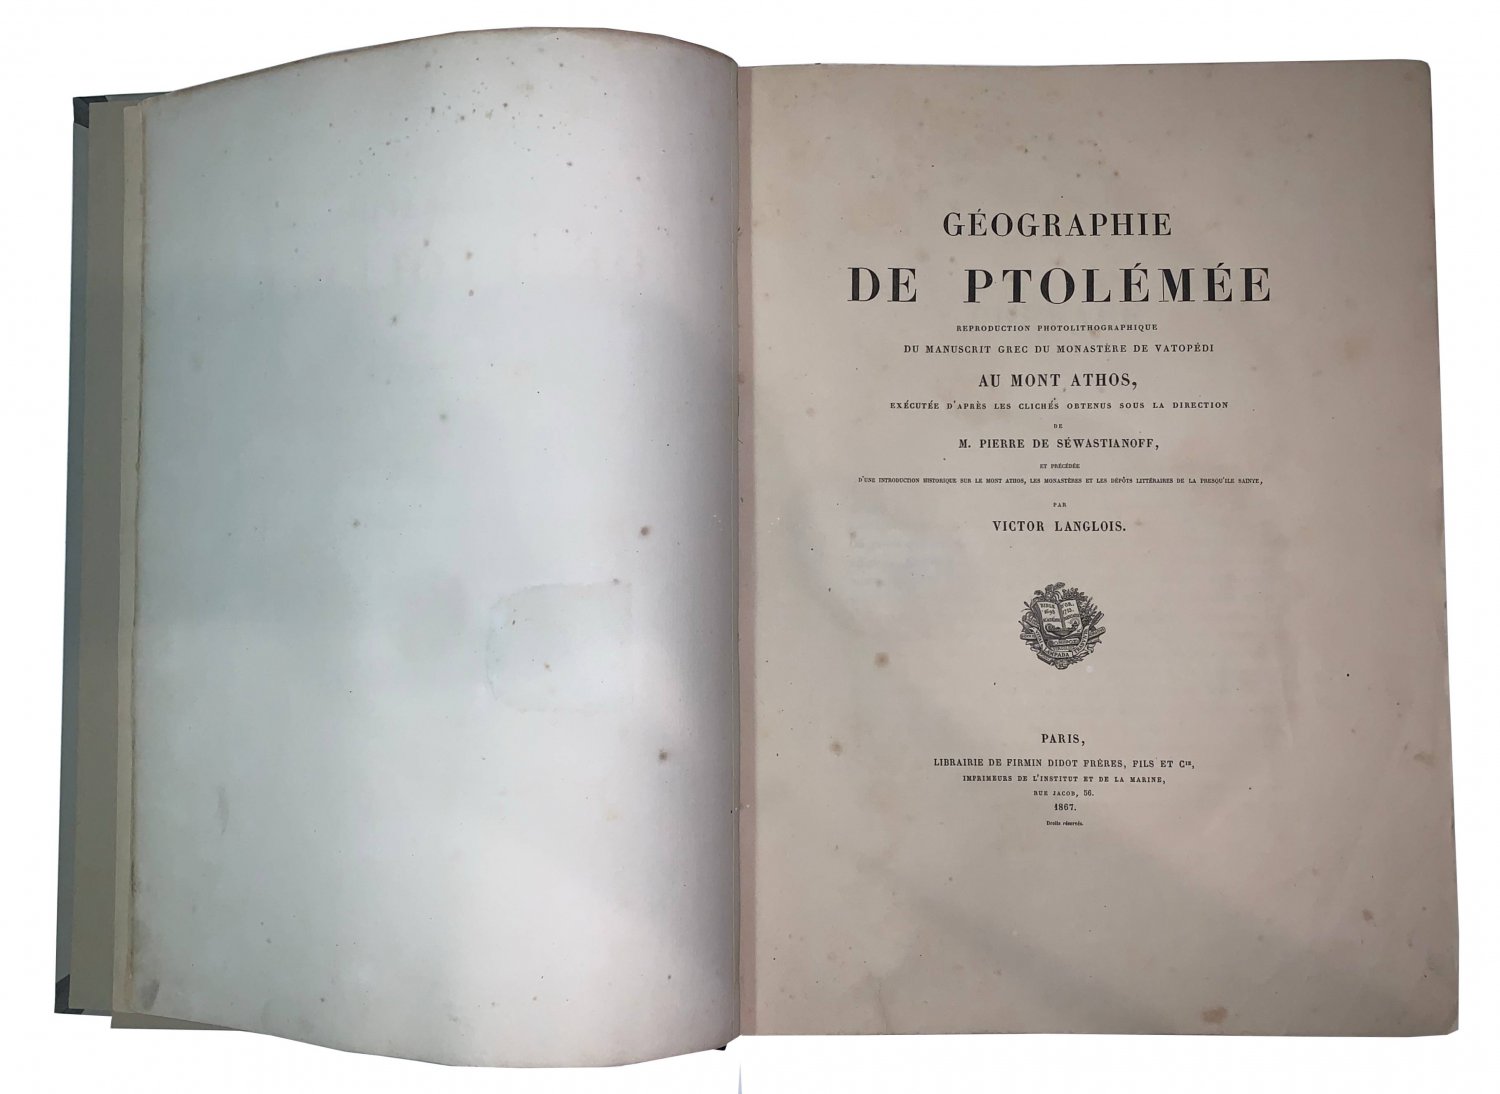 V.Langlois Geographie de Ptolemee. Reproduction photolithographique du manuscrit